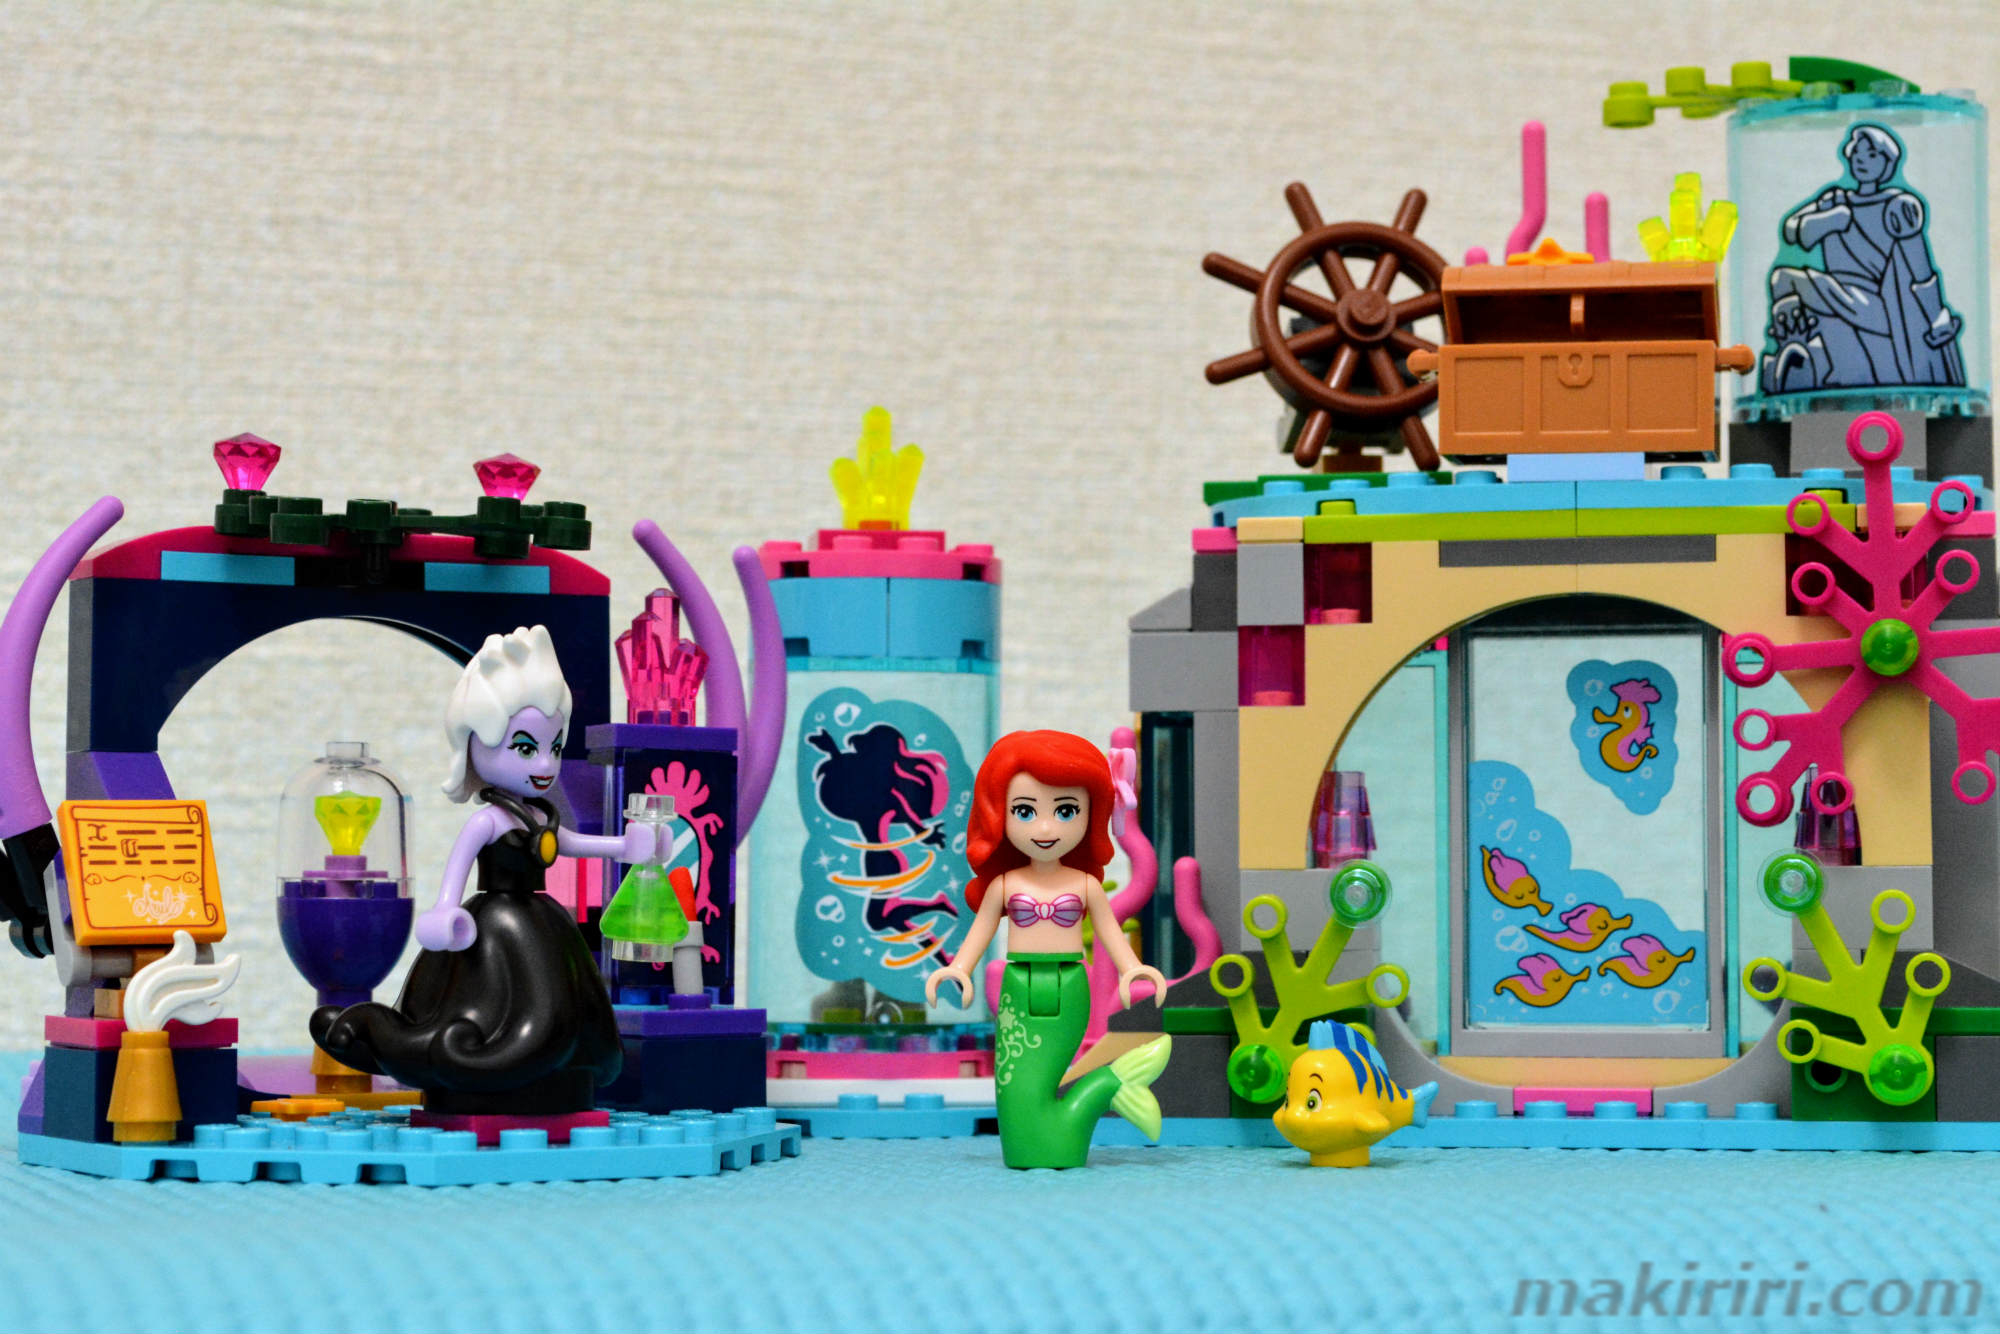 低価SALE Lego - レゴ 41145 ディズニー アリエル 海の魔女アースラの